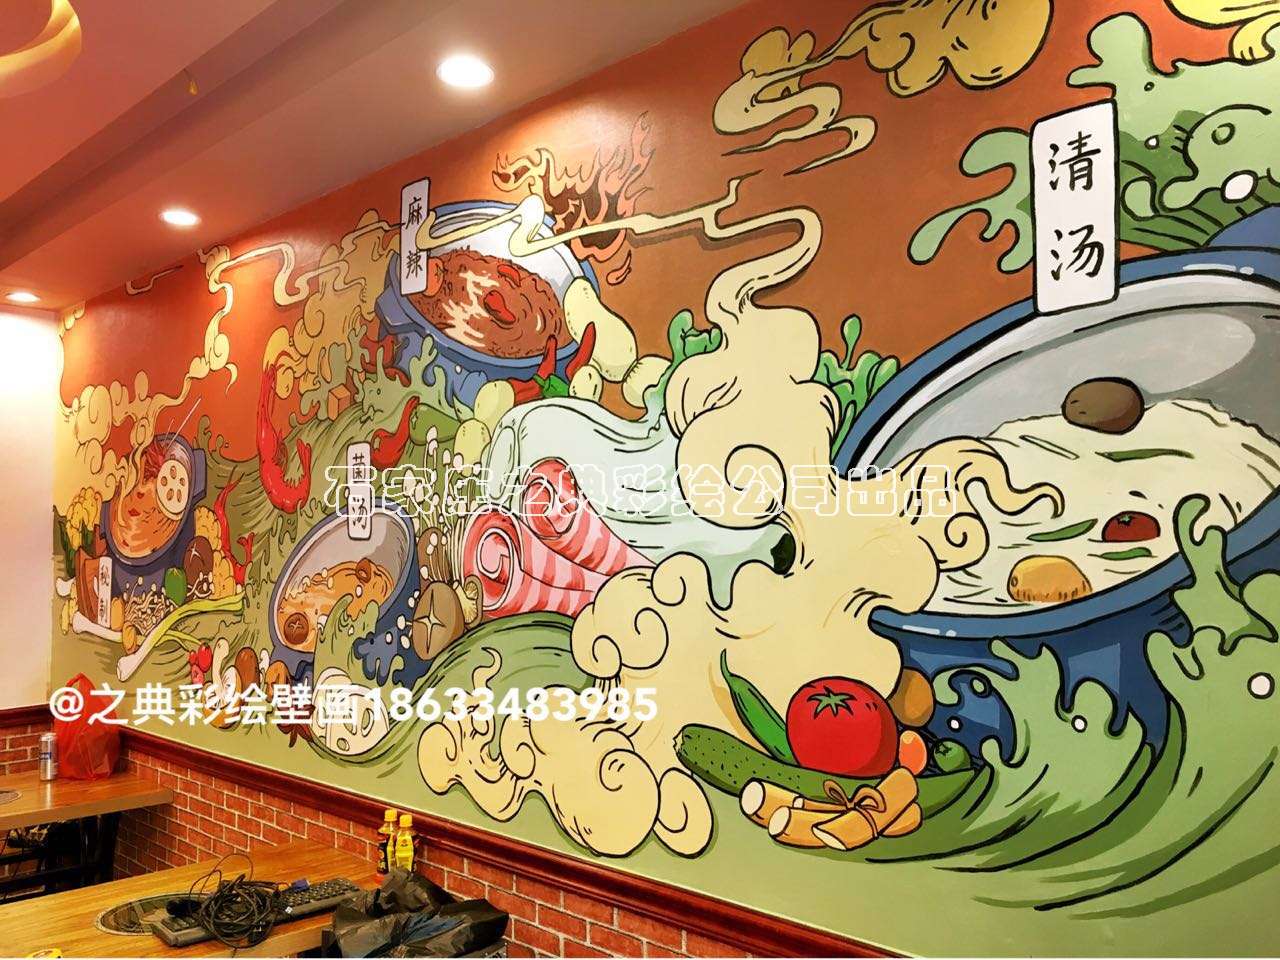 石家庄|十二签火锅店墙体手绘壁画-之典彩绘壁画出品